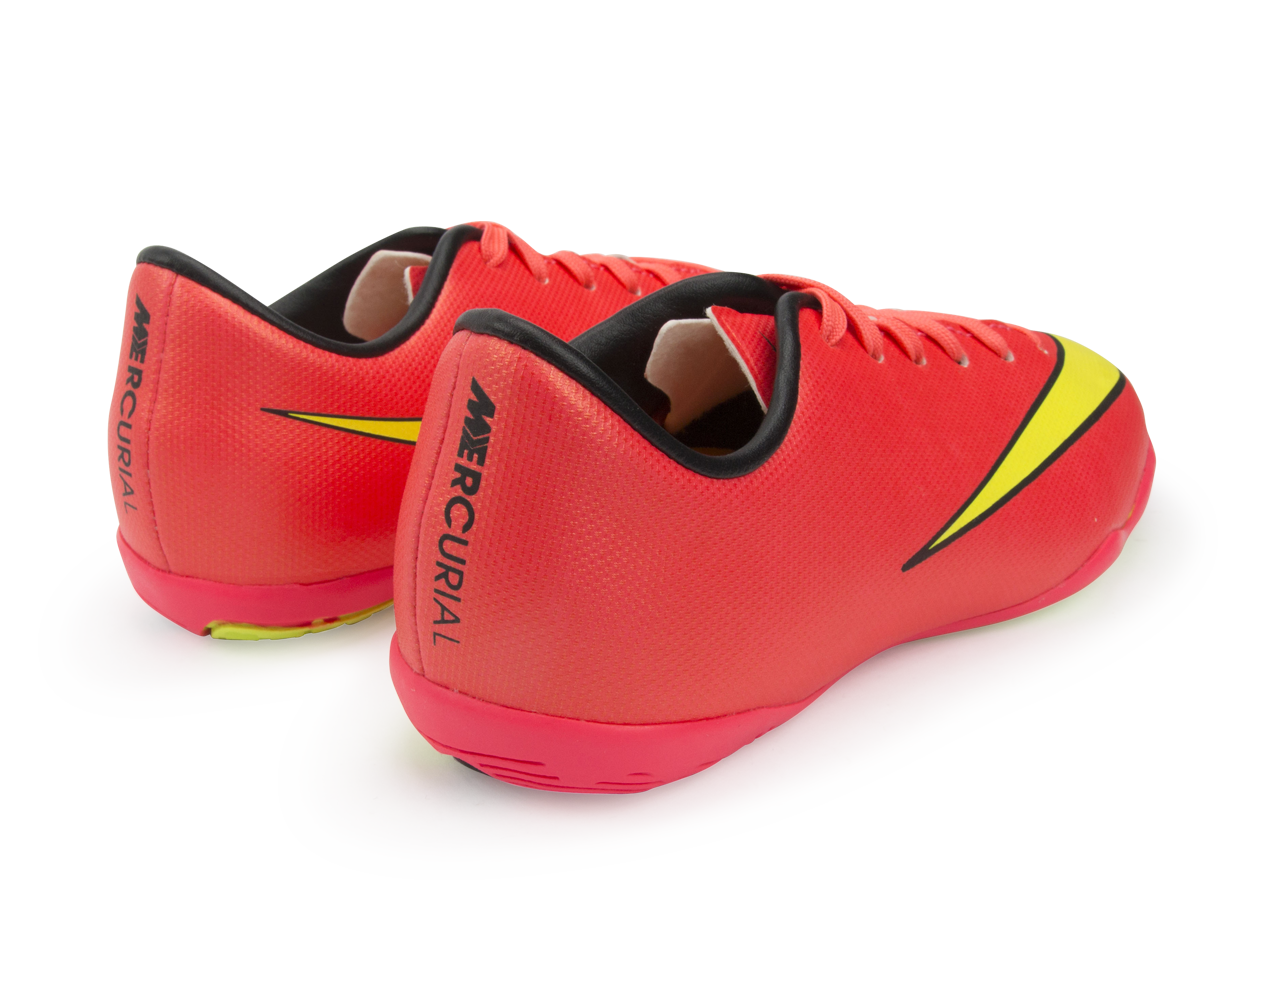 Nike Kids Mercurial Victory V Indoor Soccer Shoes Hyper Punch/Volt/Black